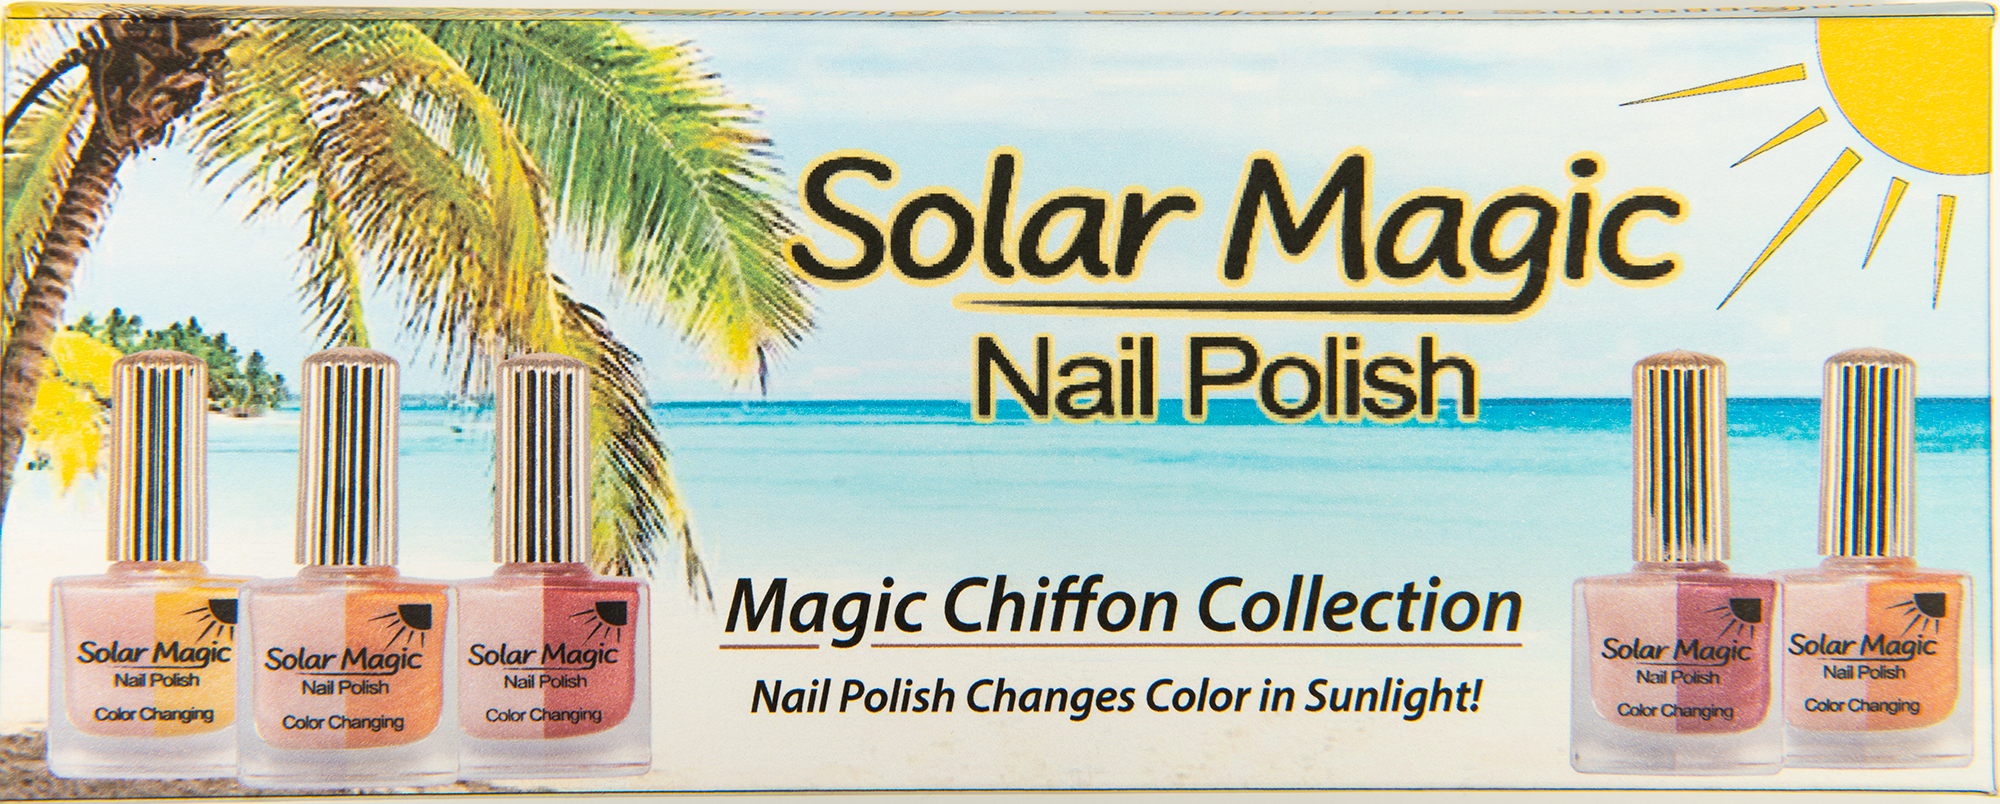 Magic Chiffon Color Changing Nail Polish Collection